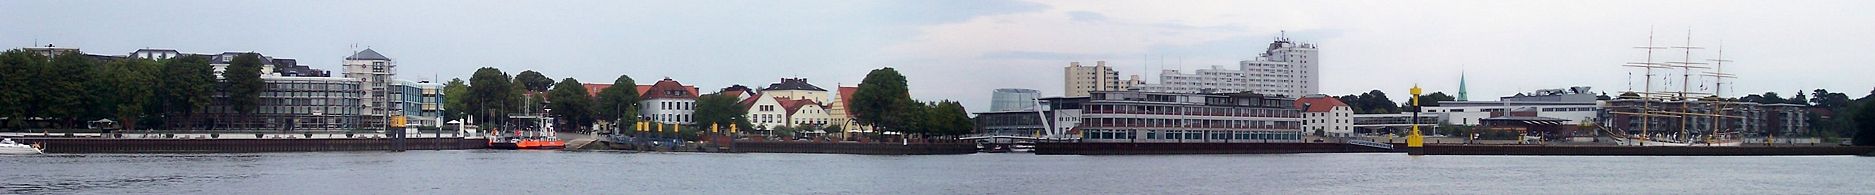 Panorama der Wasserseite von Vegesack